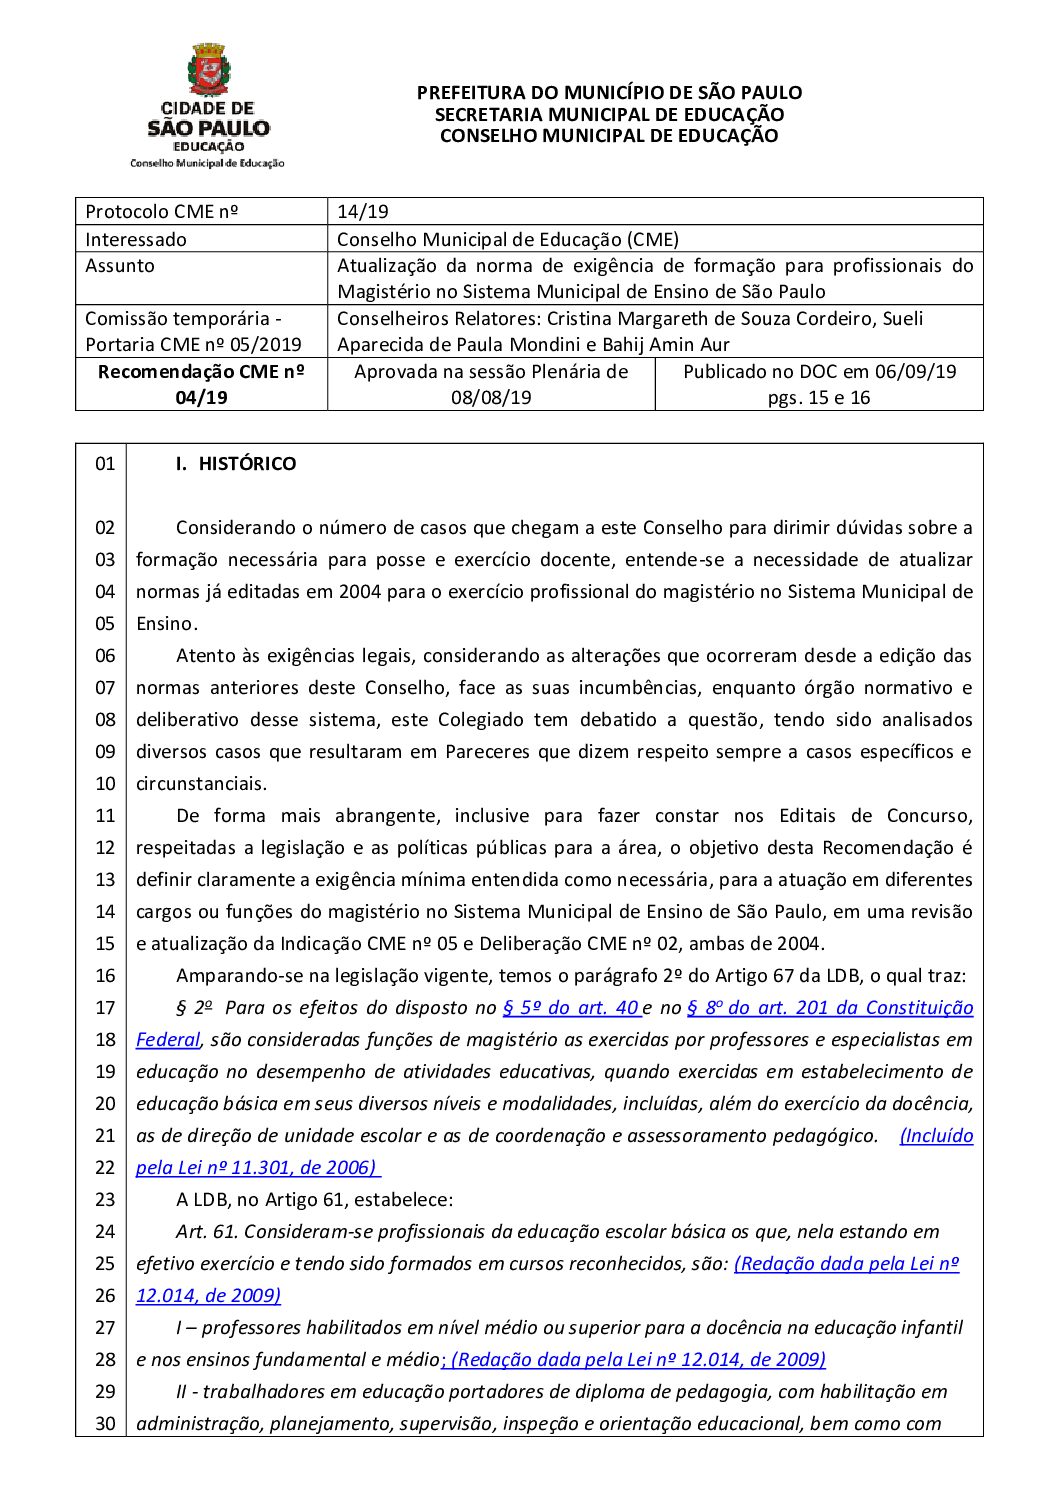 Recomendação CME nº 04/2019 - Atualização da norma de exigência de formação para profissionais do Magistério no Sistema Municipal de Ensino de São Paulo 